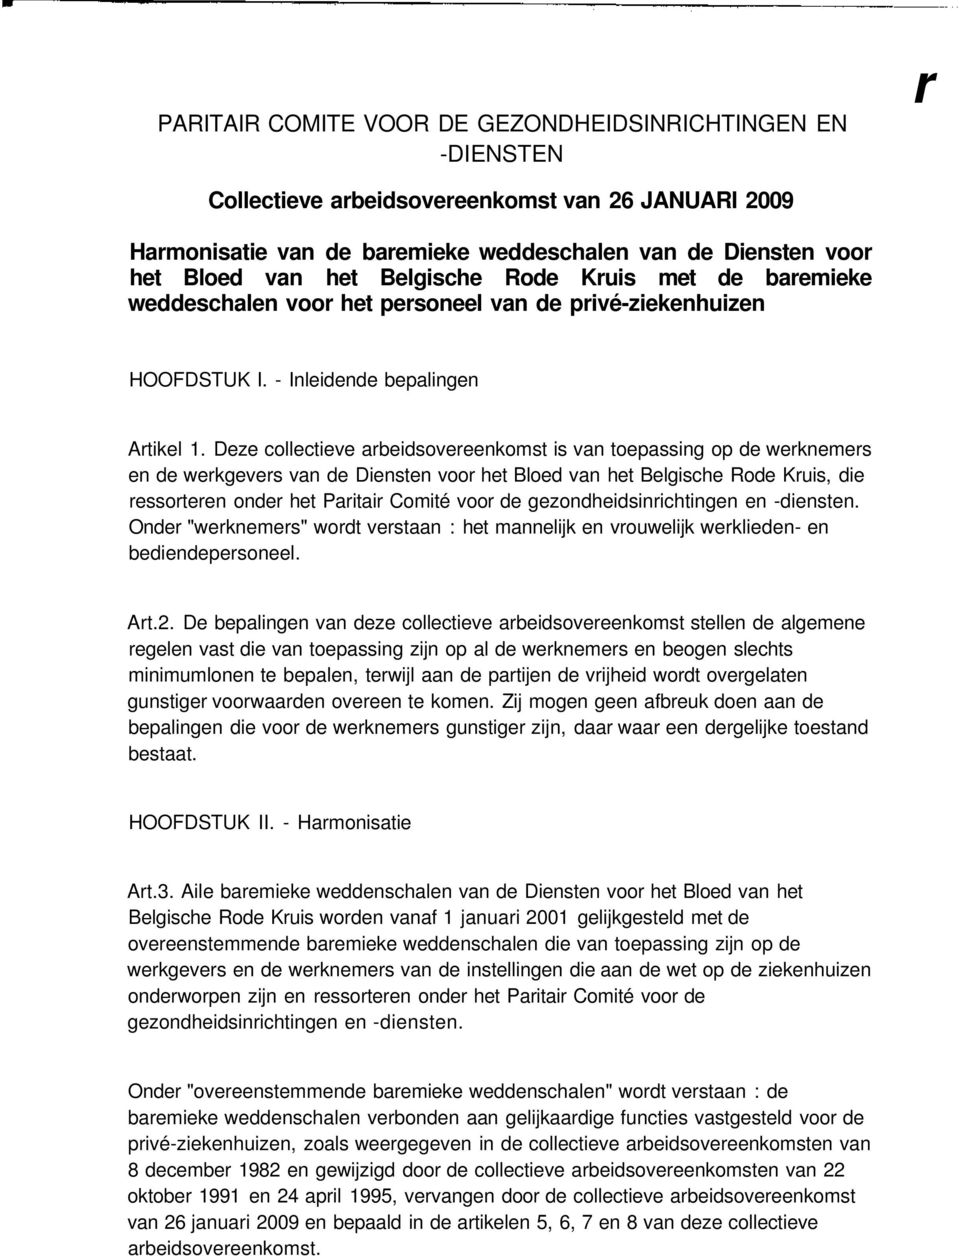 Deze collectieve arbeidsovereenkomst is van toepassing op de werknemers en de werkgevers van de Diensten voor het Bloed van het Belgische Rode Kruis, die ressorteren onder het Paritair Comité voor de